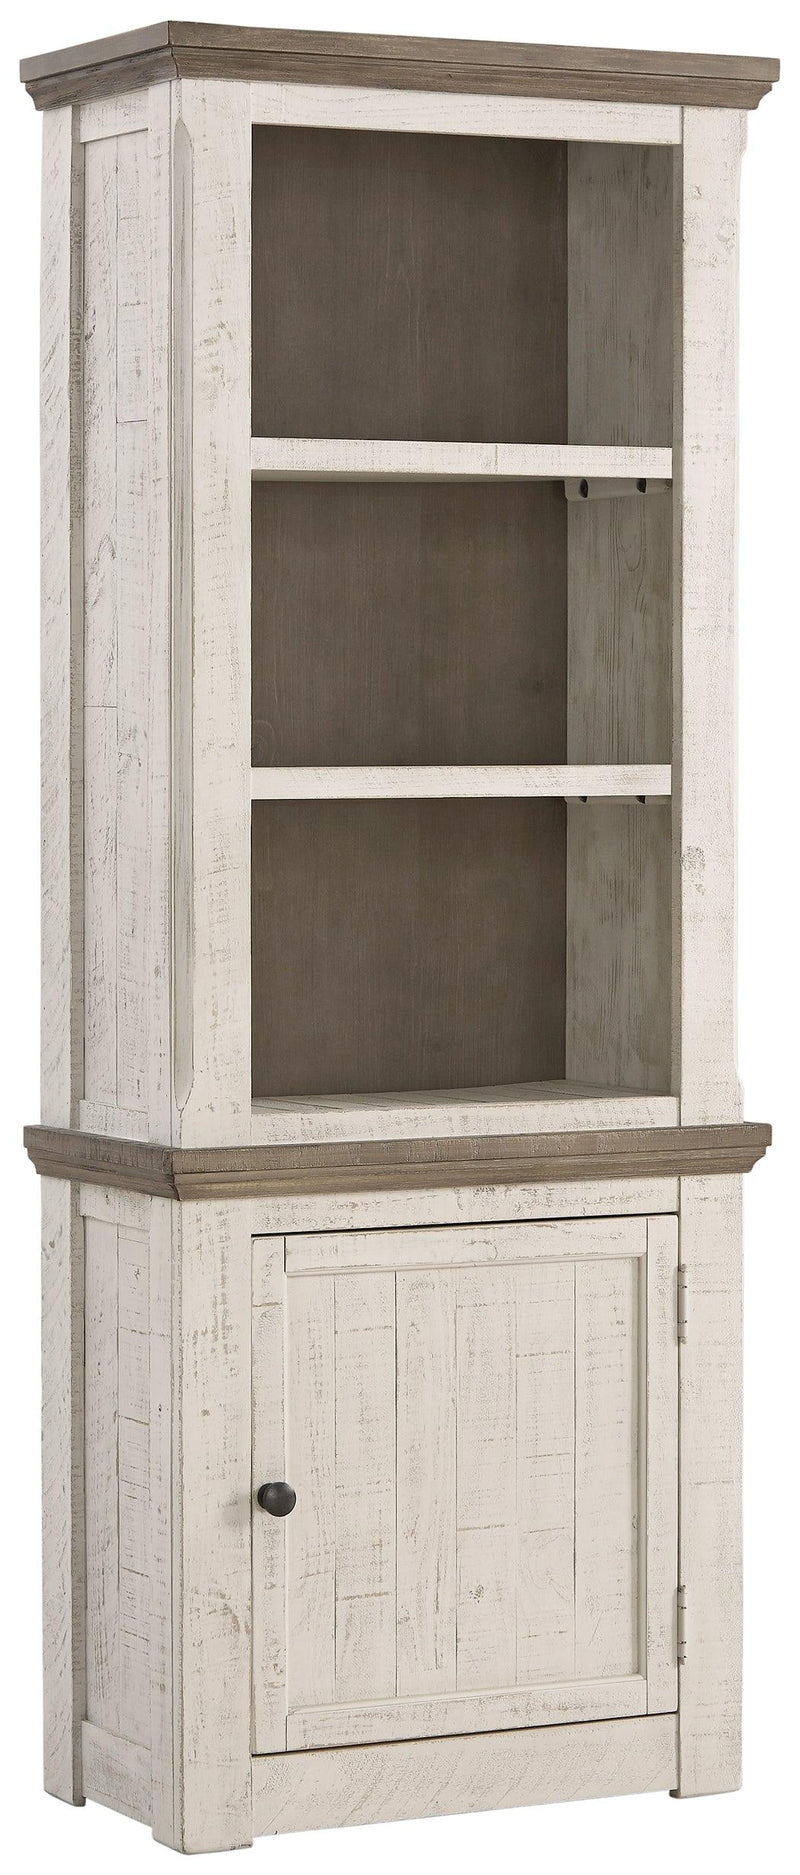 Havalance Two-tone Right Pier Cabinet - Ella Furniture